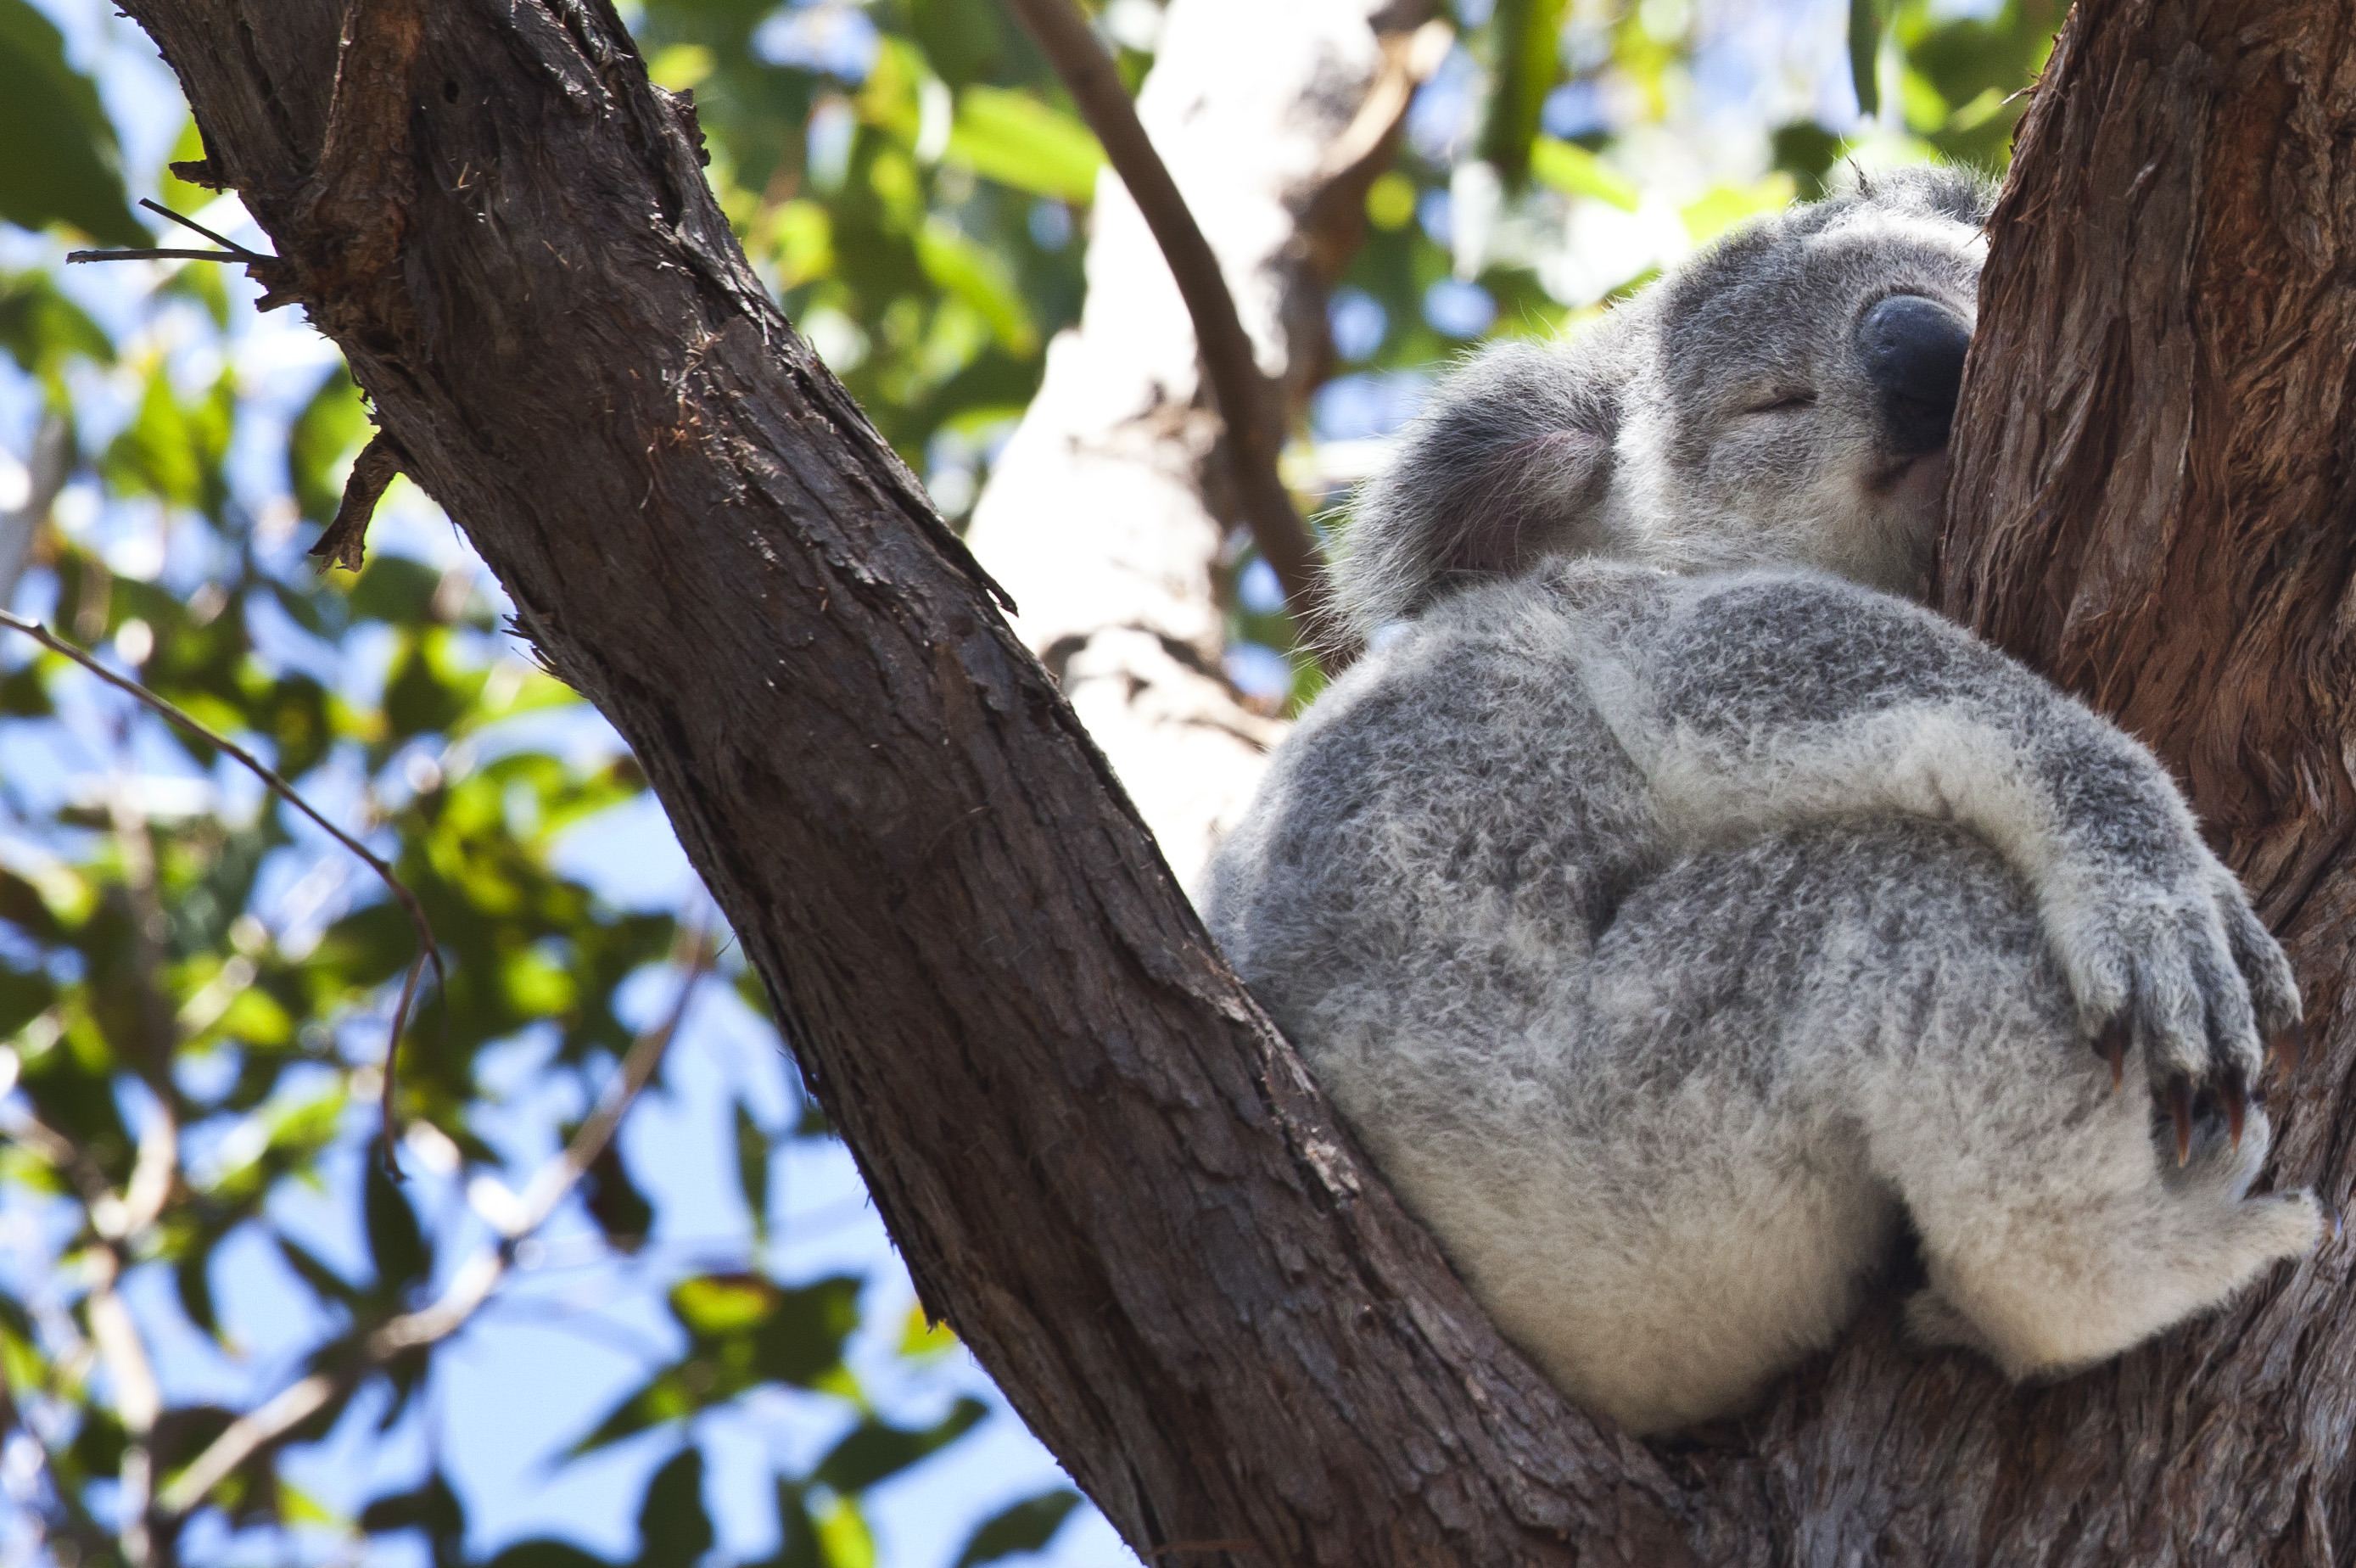 Állatkínzással vádolnak egy ausztrál földtulajdonost, mert a területrendezése miatt több tucat koala pusztult el